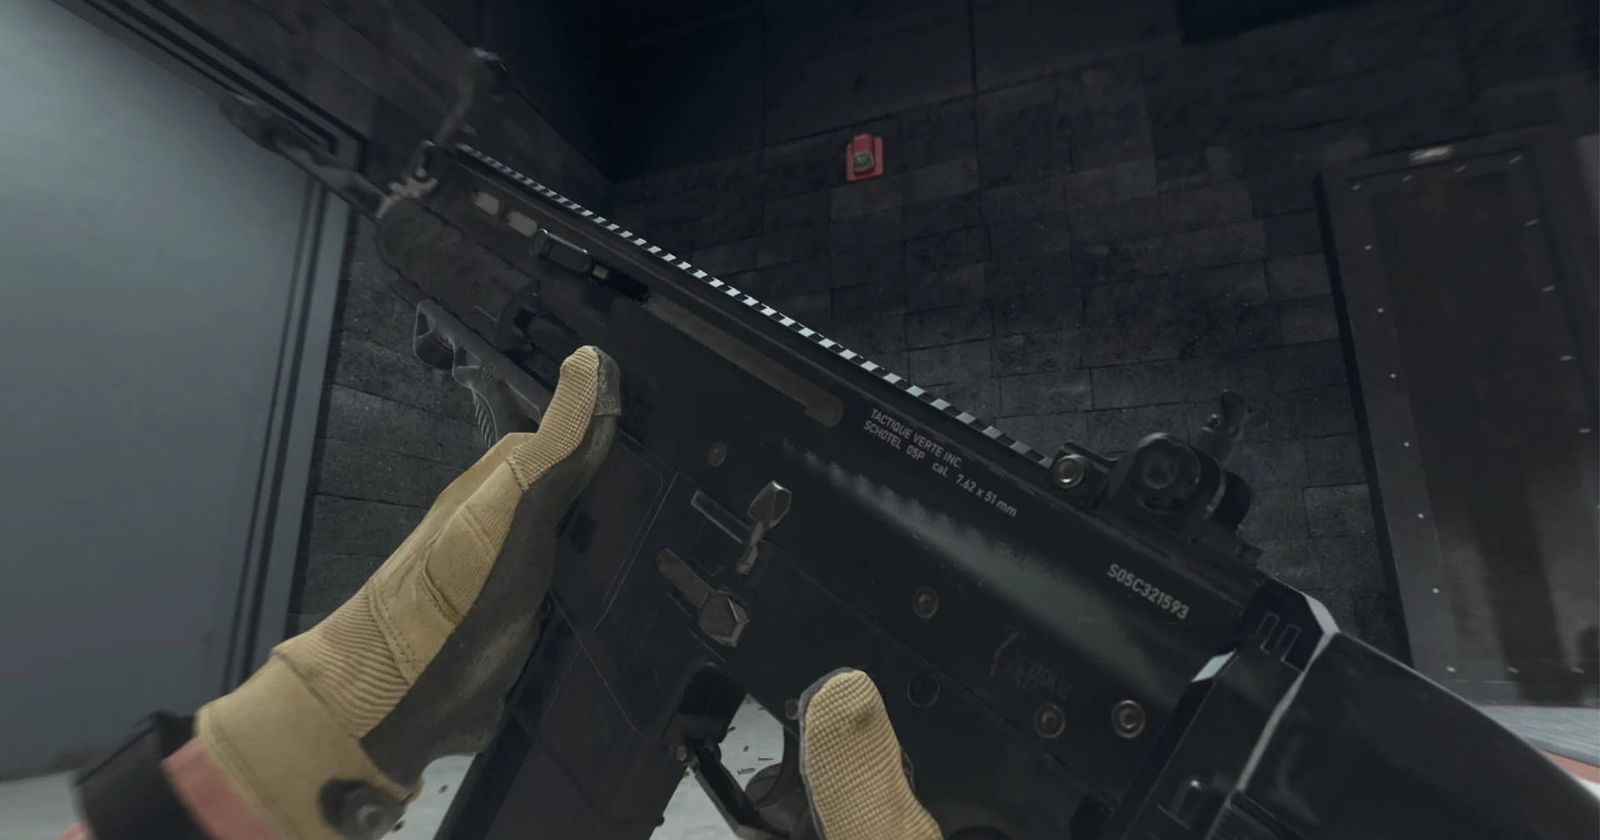 Call of Duty: Modern Warfare 3 - Internet Movie Firearms Database